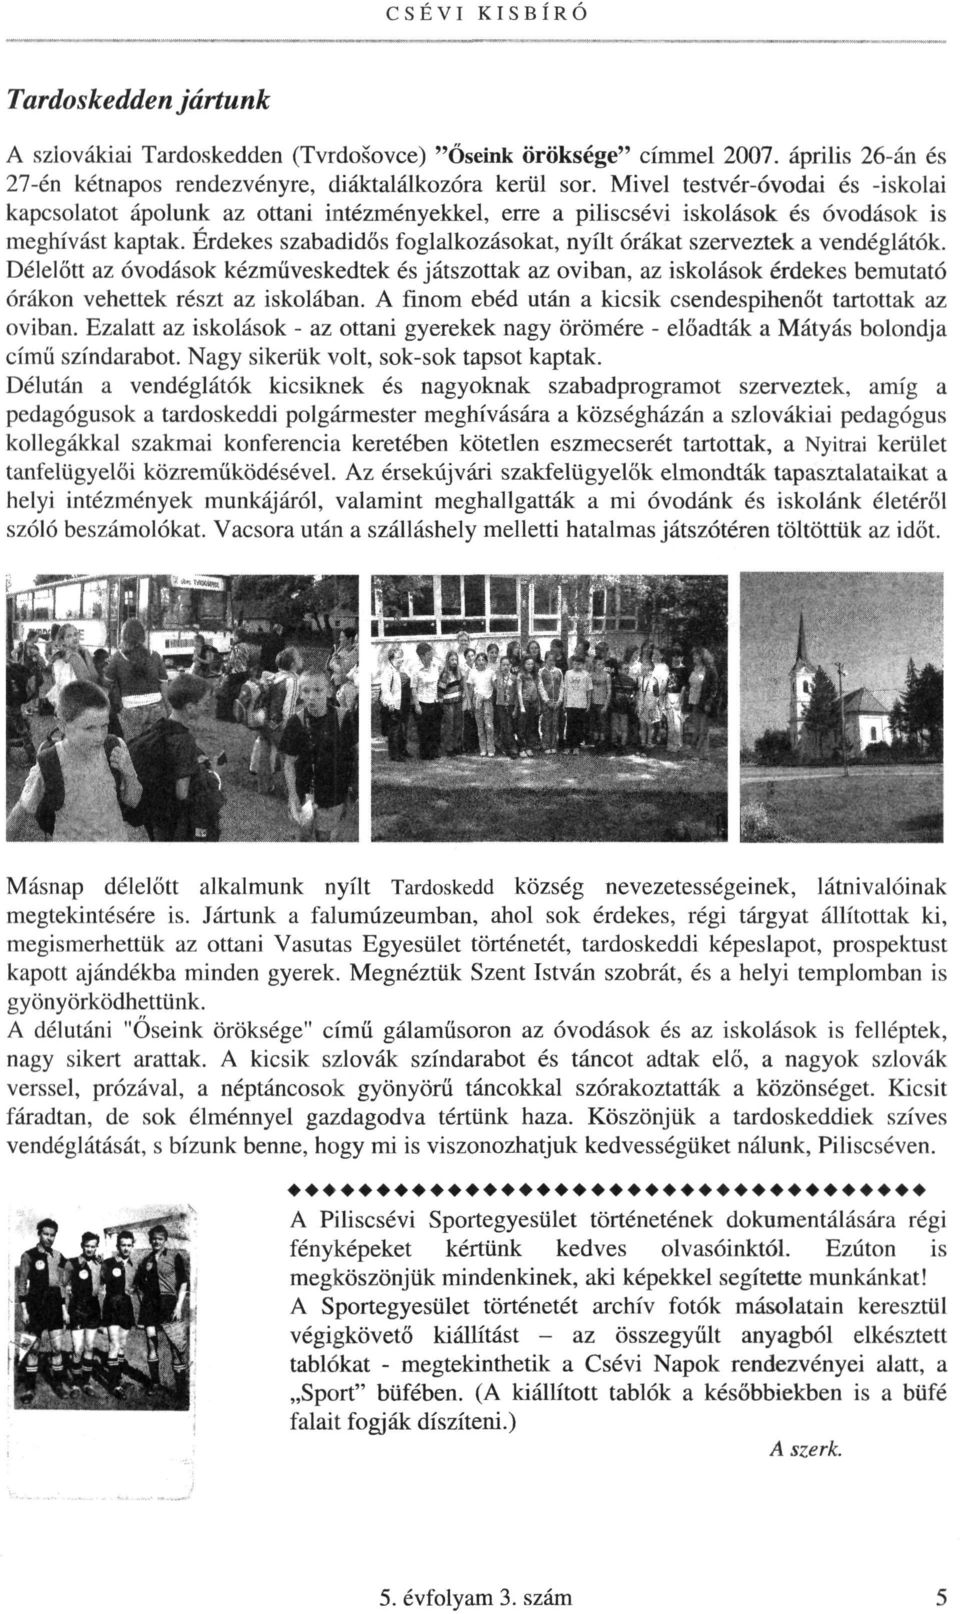 CSÉVI KISBÍRÓ Piliscsév község Önkormányzatának lapja 5. évfolyam. 3. szám  - PDF Free Download